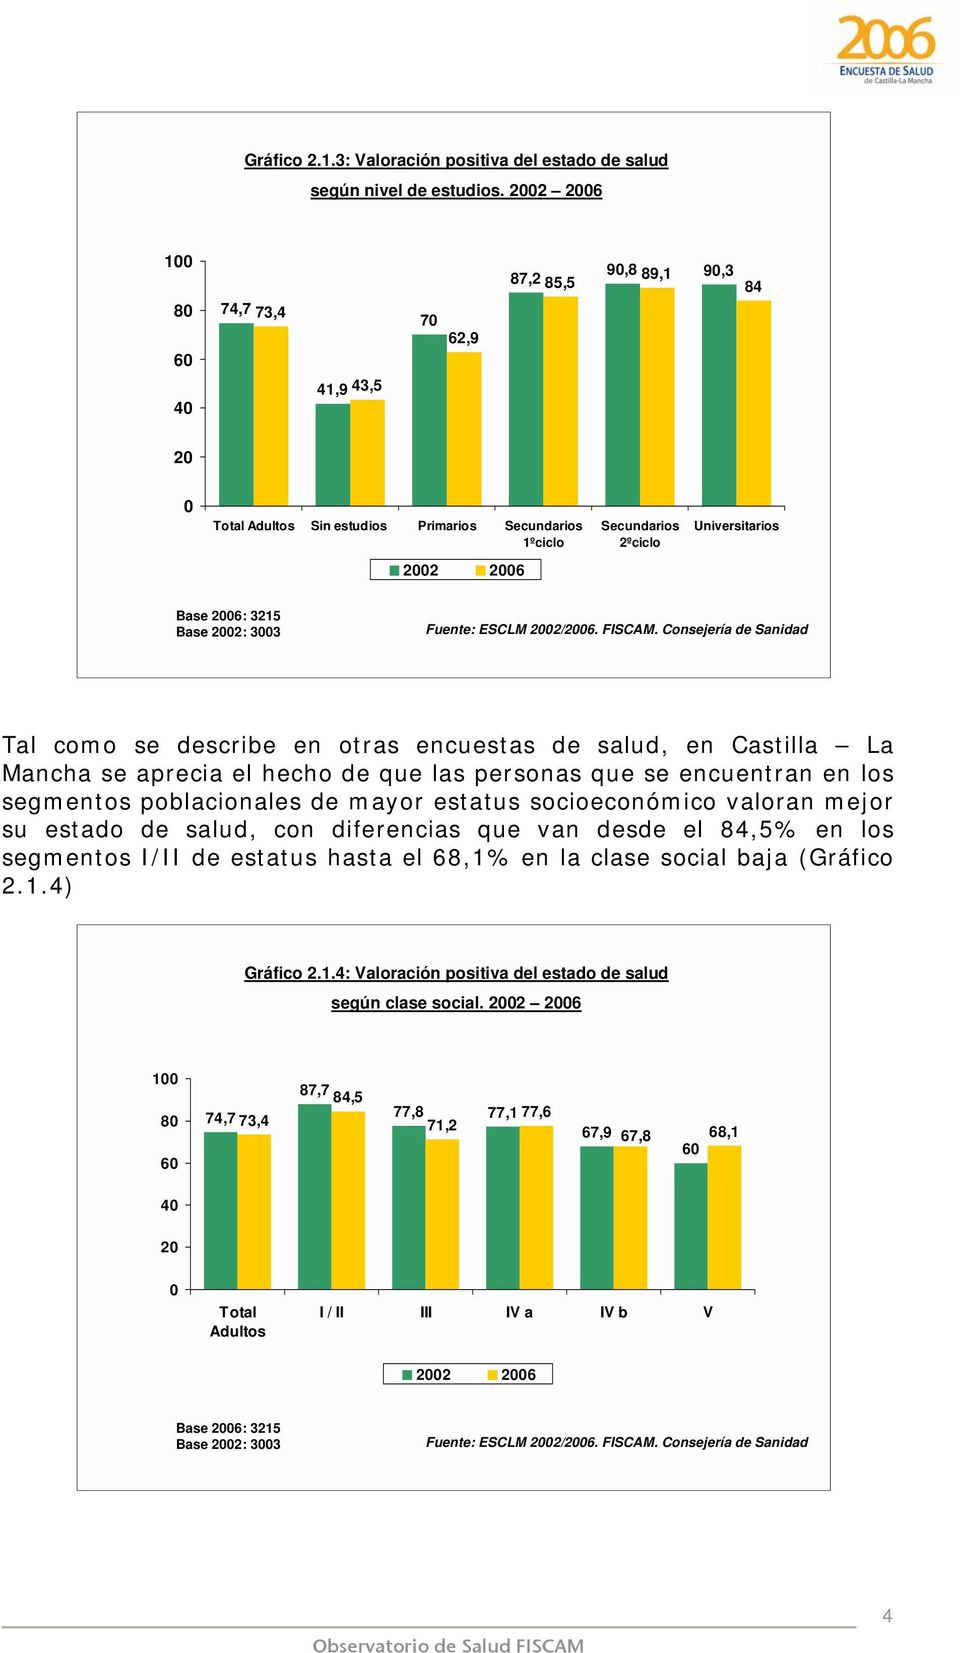 describe en otras encuestas de salud, en Castilla La Mancha se aprecia el hecho de que las personas que se encuentran en los segmentos poblacionales de mayor estatus socioeconómico valoran mejor su